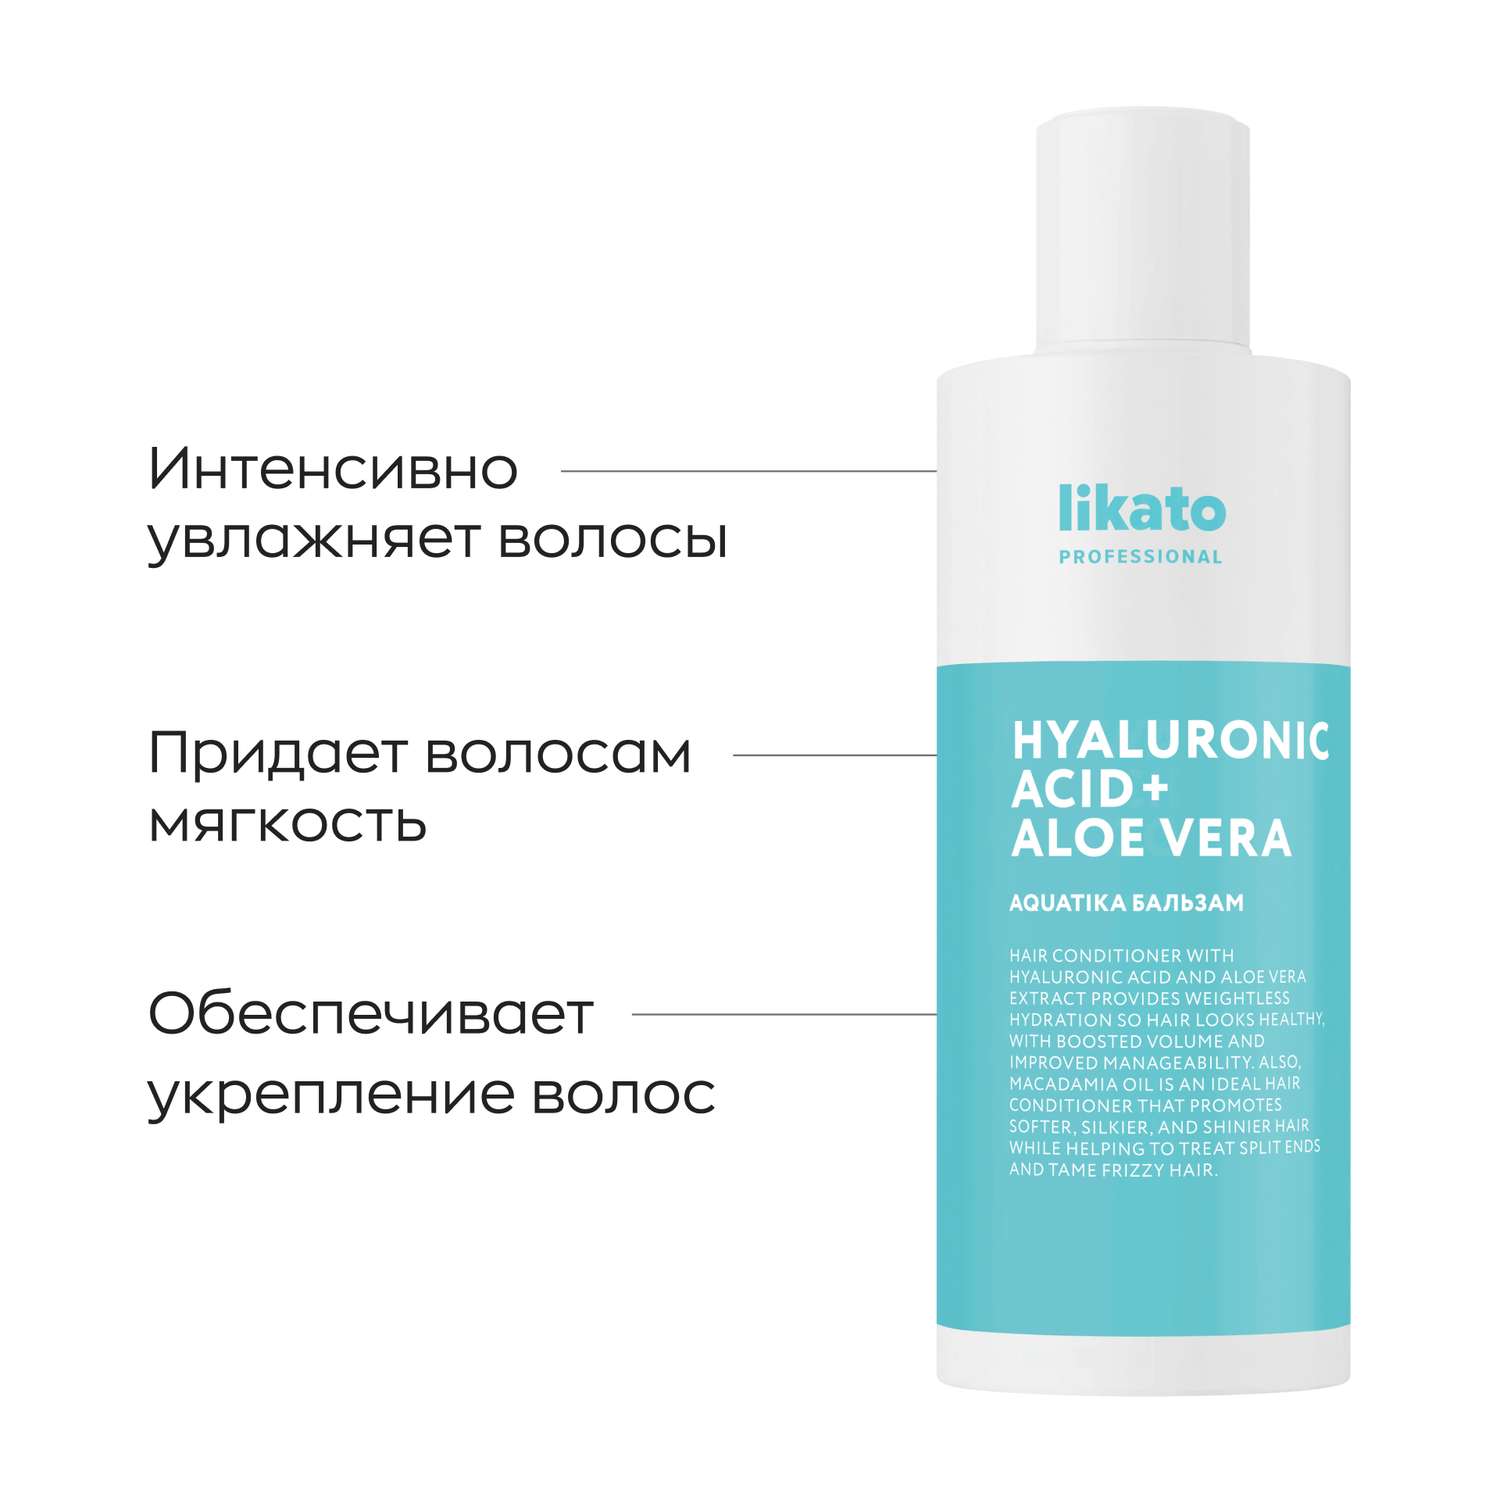 Бальзам для волос Likato Professional AQUATIKA Софт увлажнение Likato 250мл - фото 1